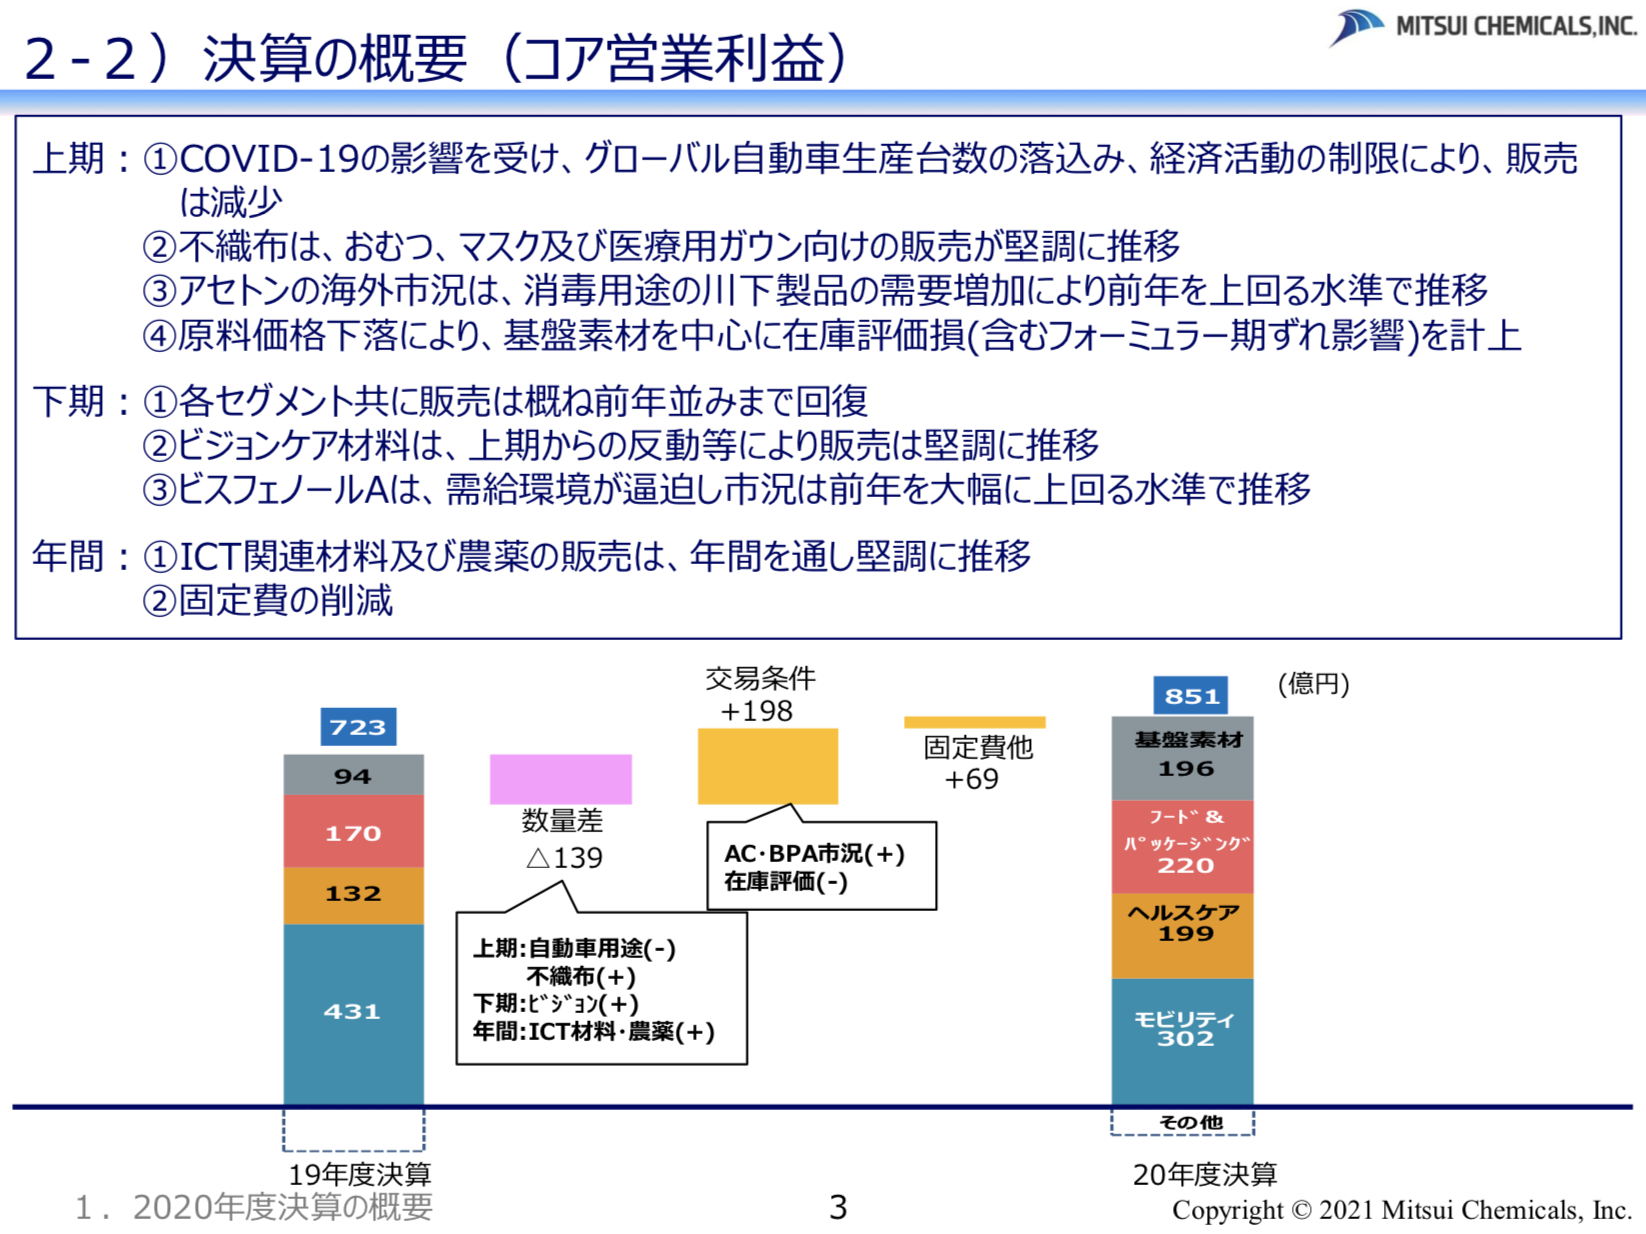 三井化学株式会社 2020年度決算の概要及び 2021年度業績予想の概要